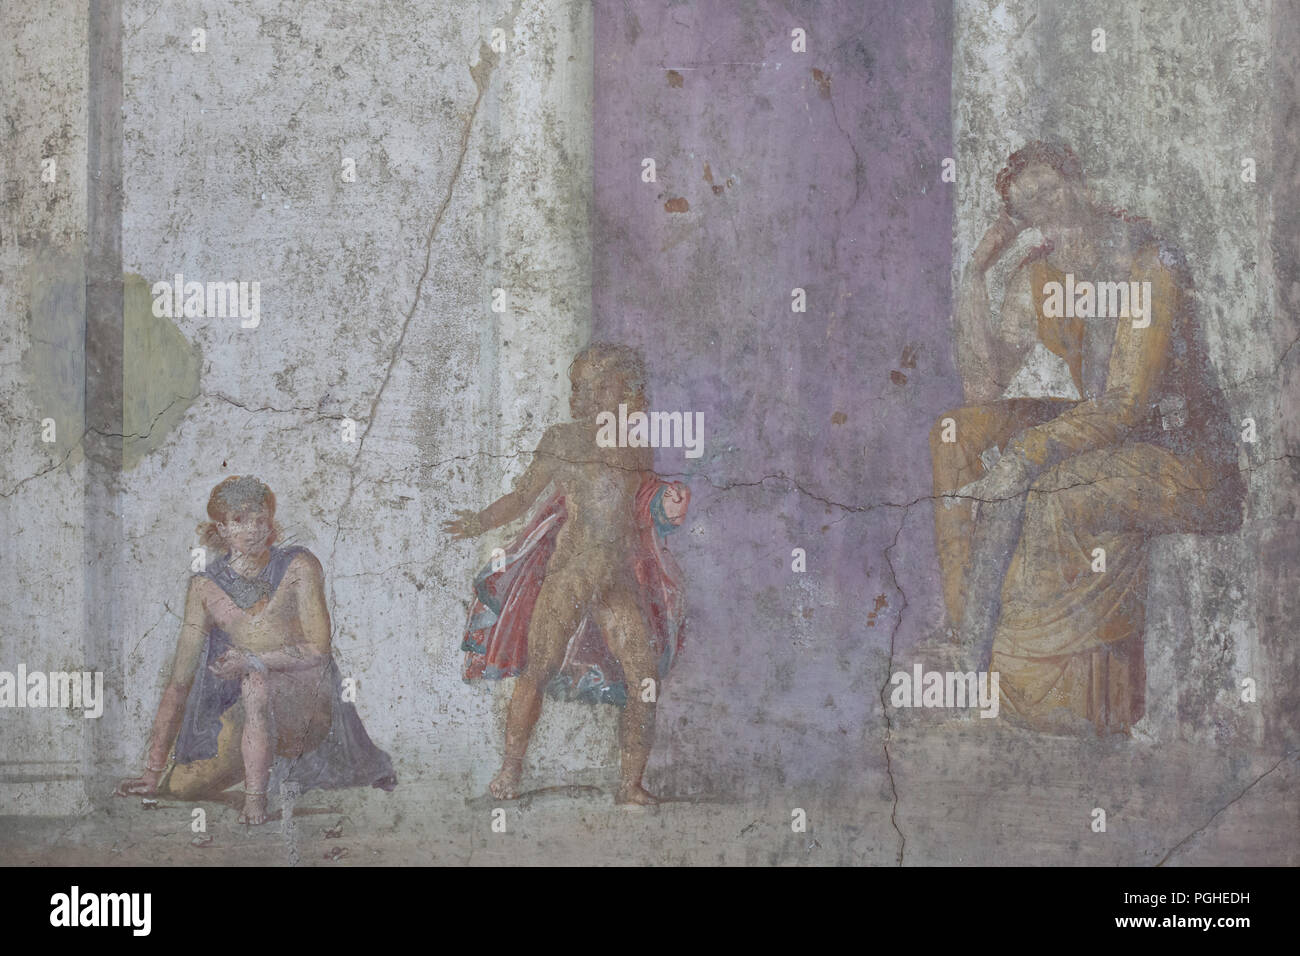 Planification Medea le meurtre de ses enfants représentés dans la fresque romaine de la maison de Jason (Casa di Giasone) à Pompéi (20-25 Ma), maintenant exposée dans le Musée Archéologique National (Museo Archeologico Nazionale di Napoli) à Naples, Campanie, Italie. Medea est représenté assis, avec une épée à sa gauche, et à la recherche, avec anxiété, ses enfants qui jouent, pas au courant du sort qui les attend, si bien que l'enfant qui a gagné le jeu tourne vers elle en agitant une branche de la victoire. Banque D'Images